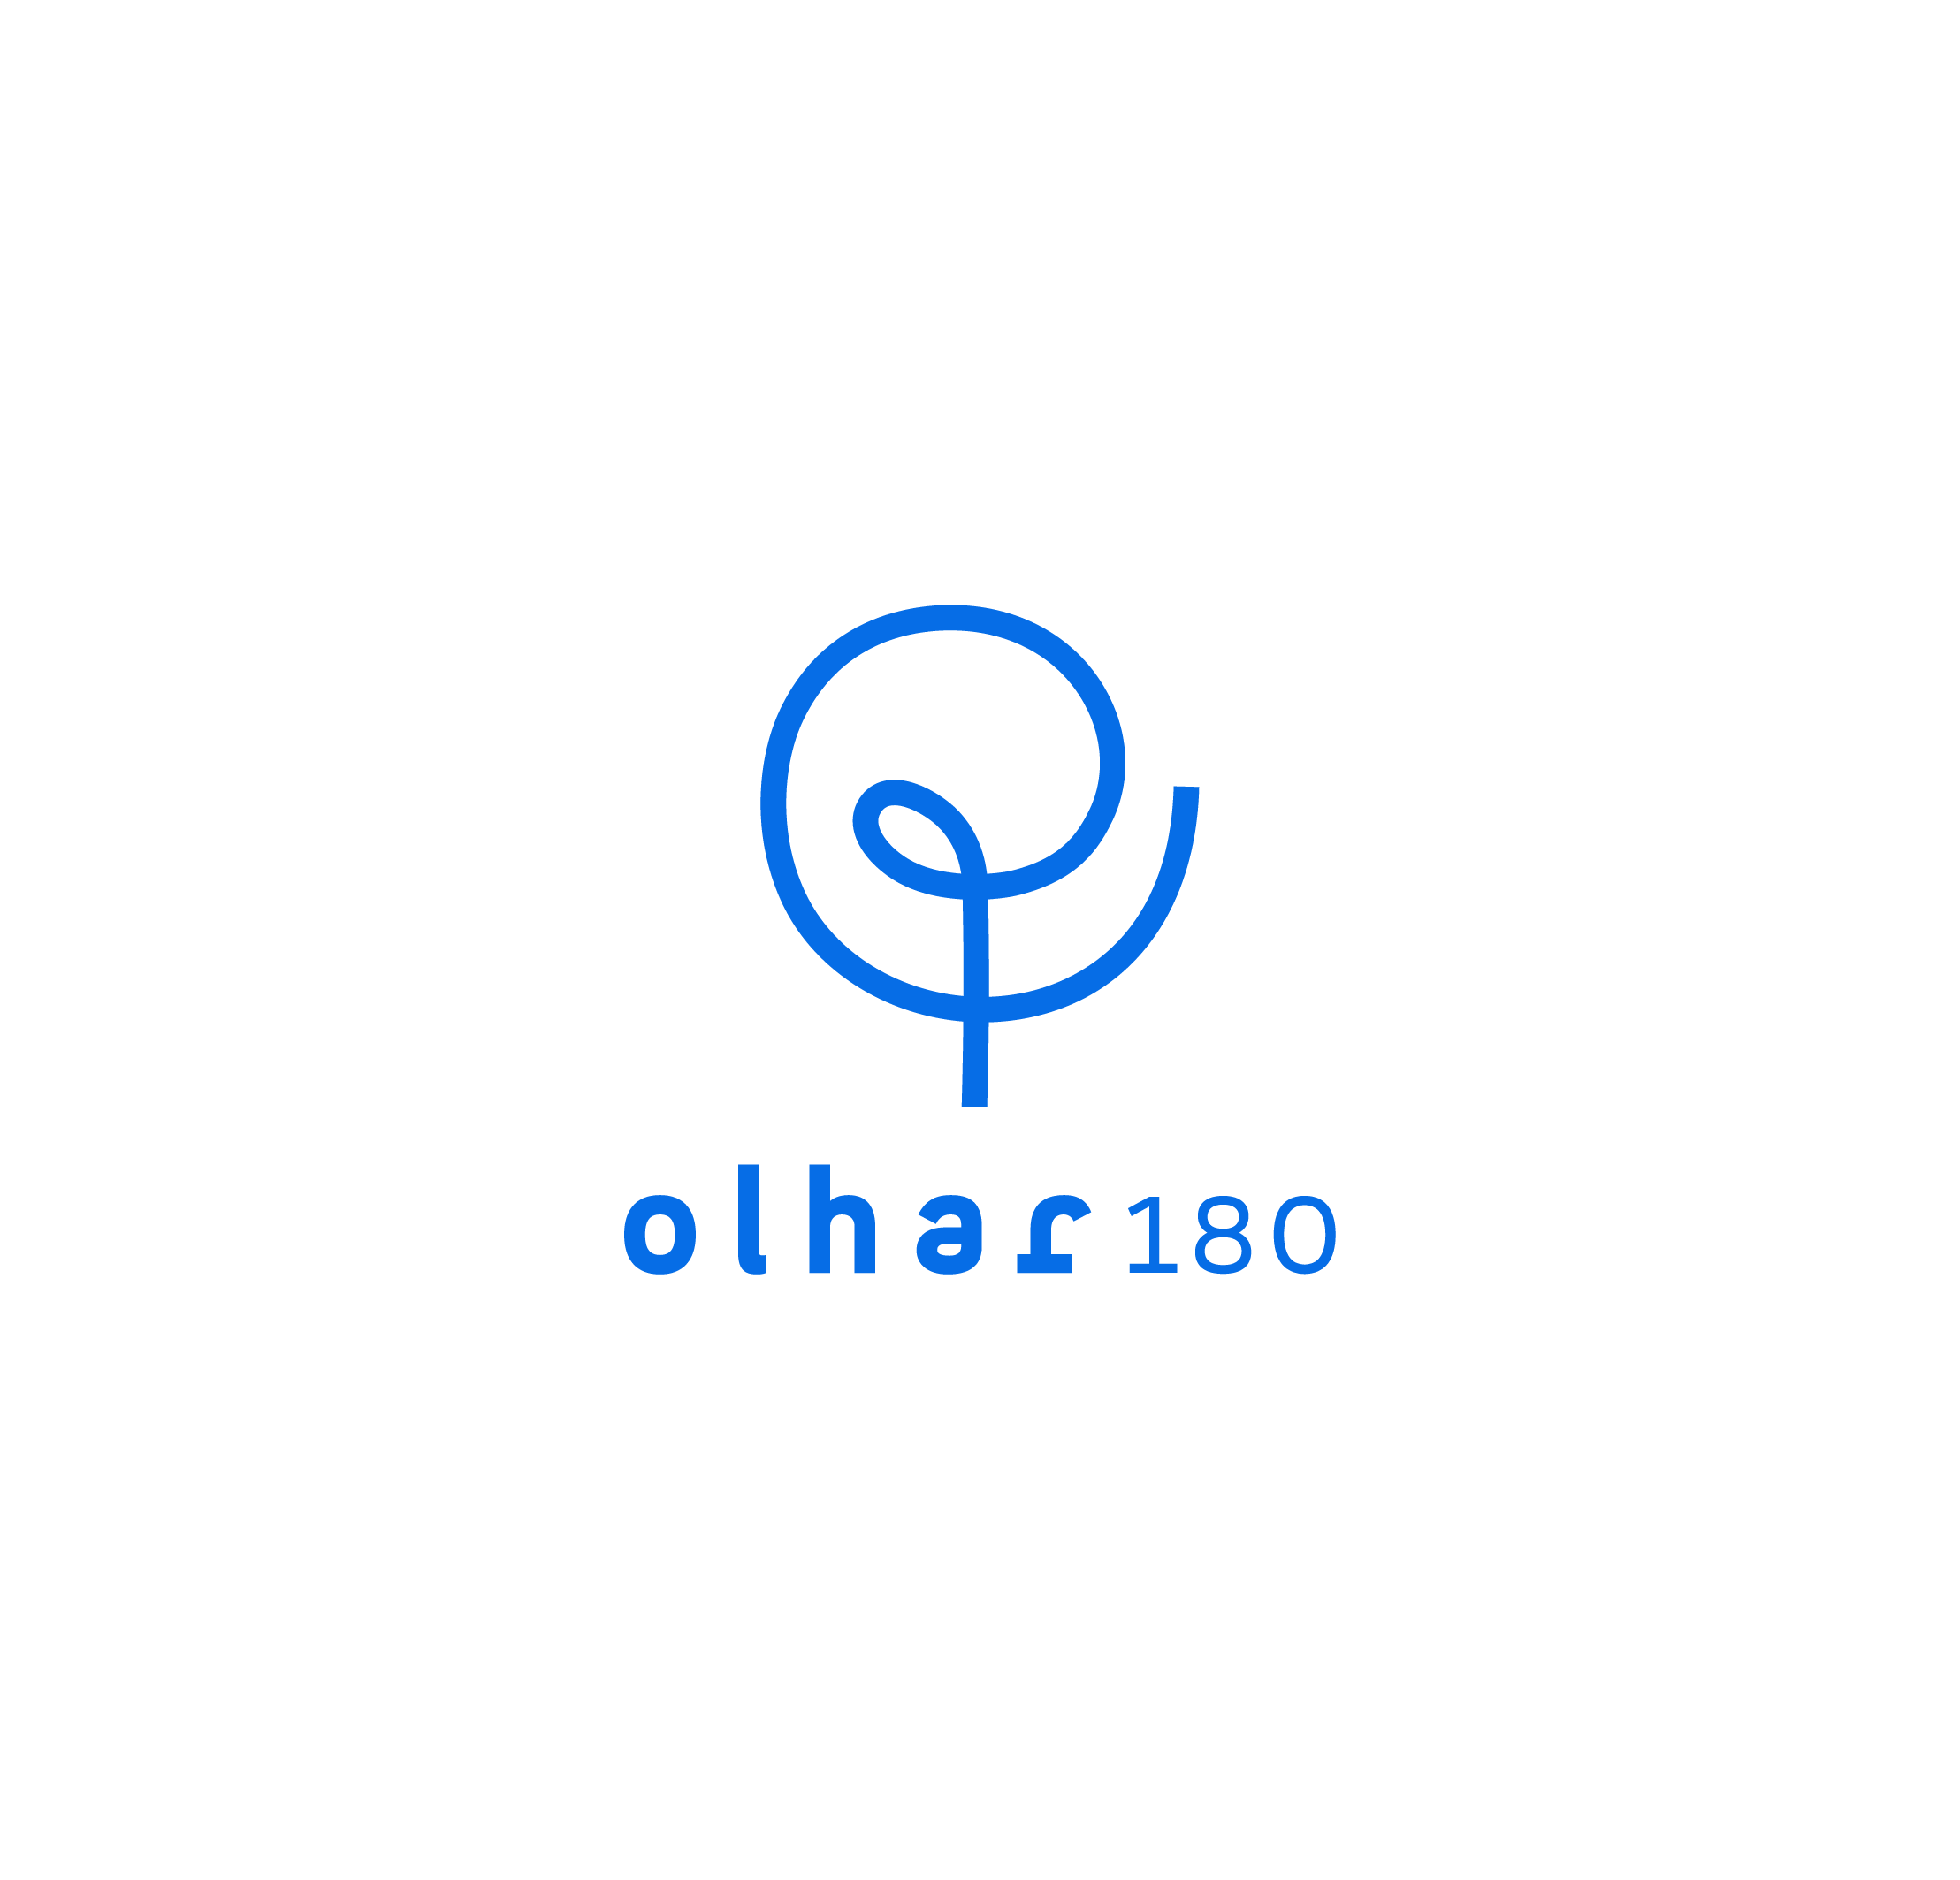 Olhar180 (2)